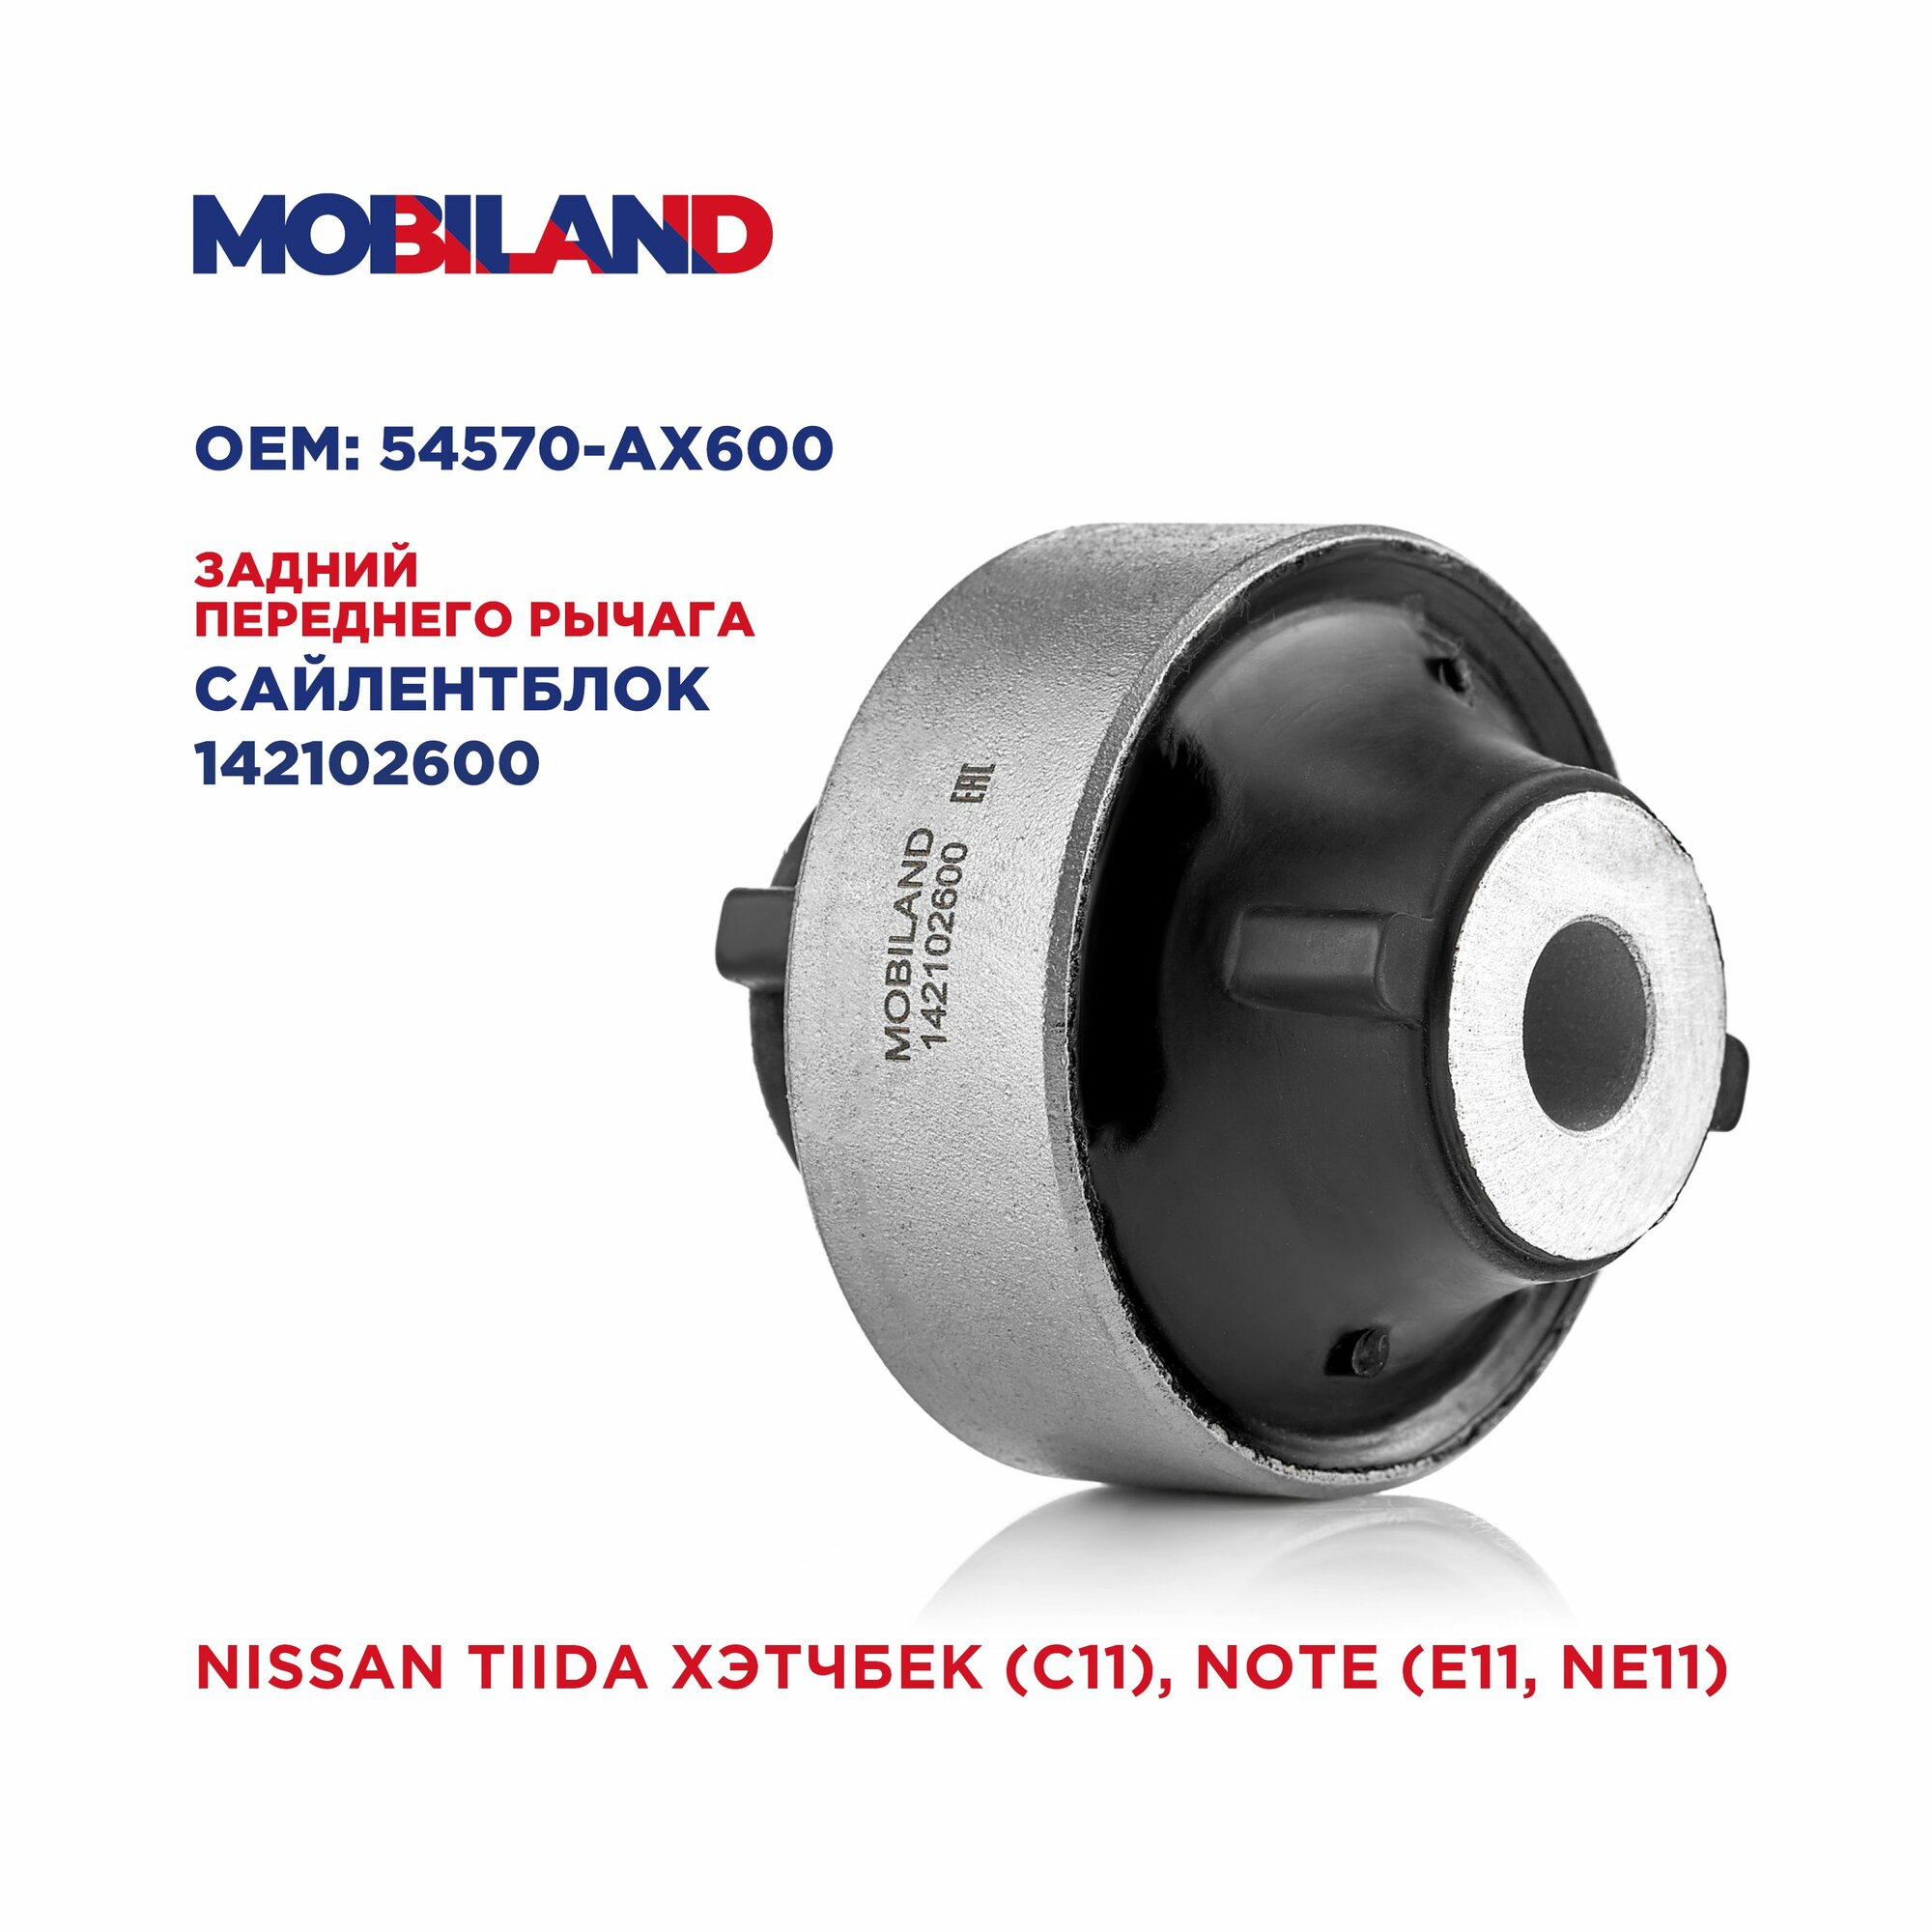 Сайлентблок задний рычага переднего для а/м NISSAN TIIDA хэтчбек (C11) NOTE (E11 NE11)